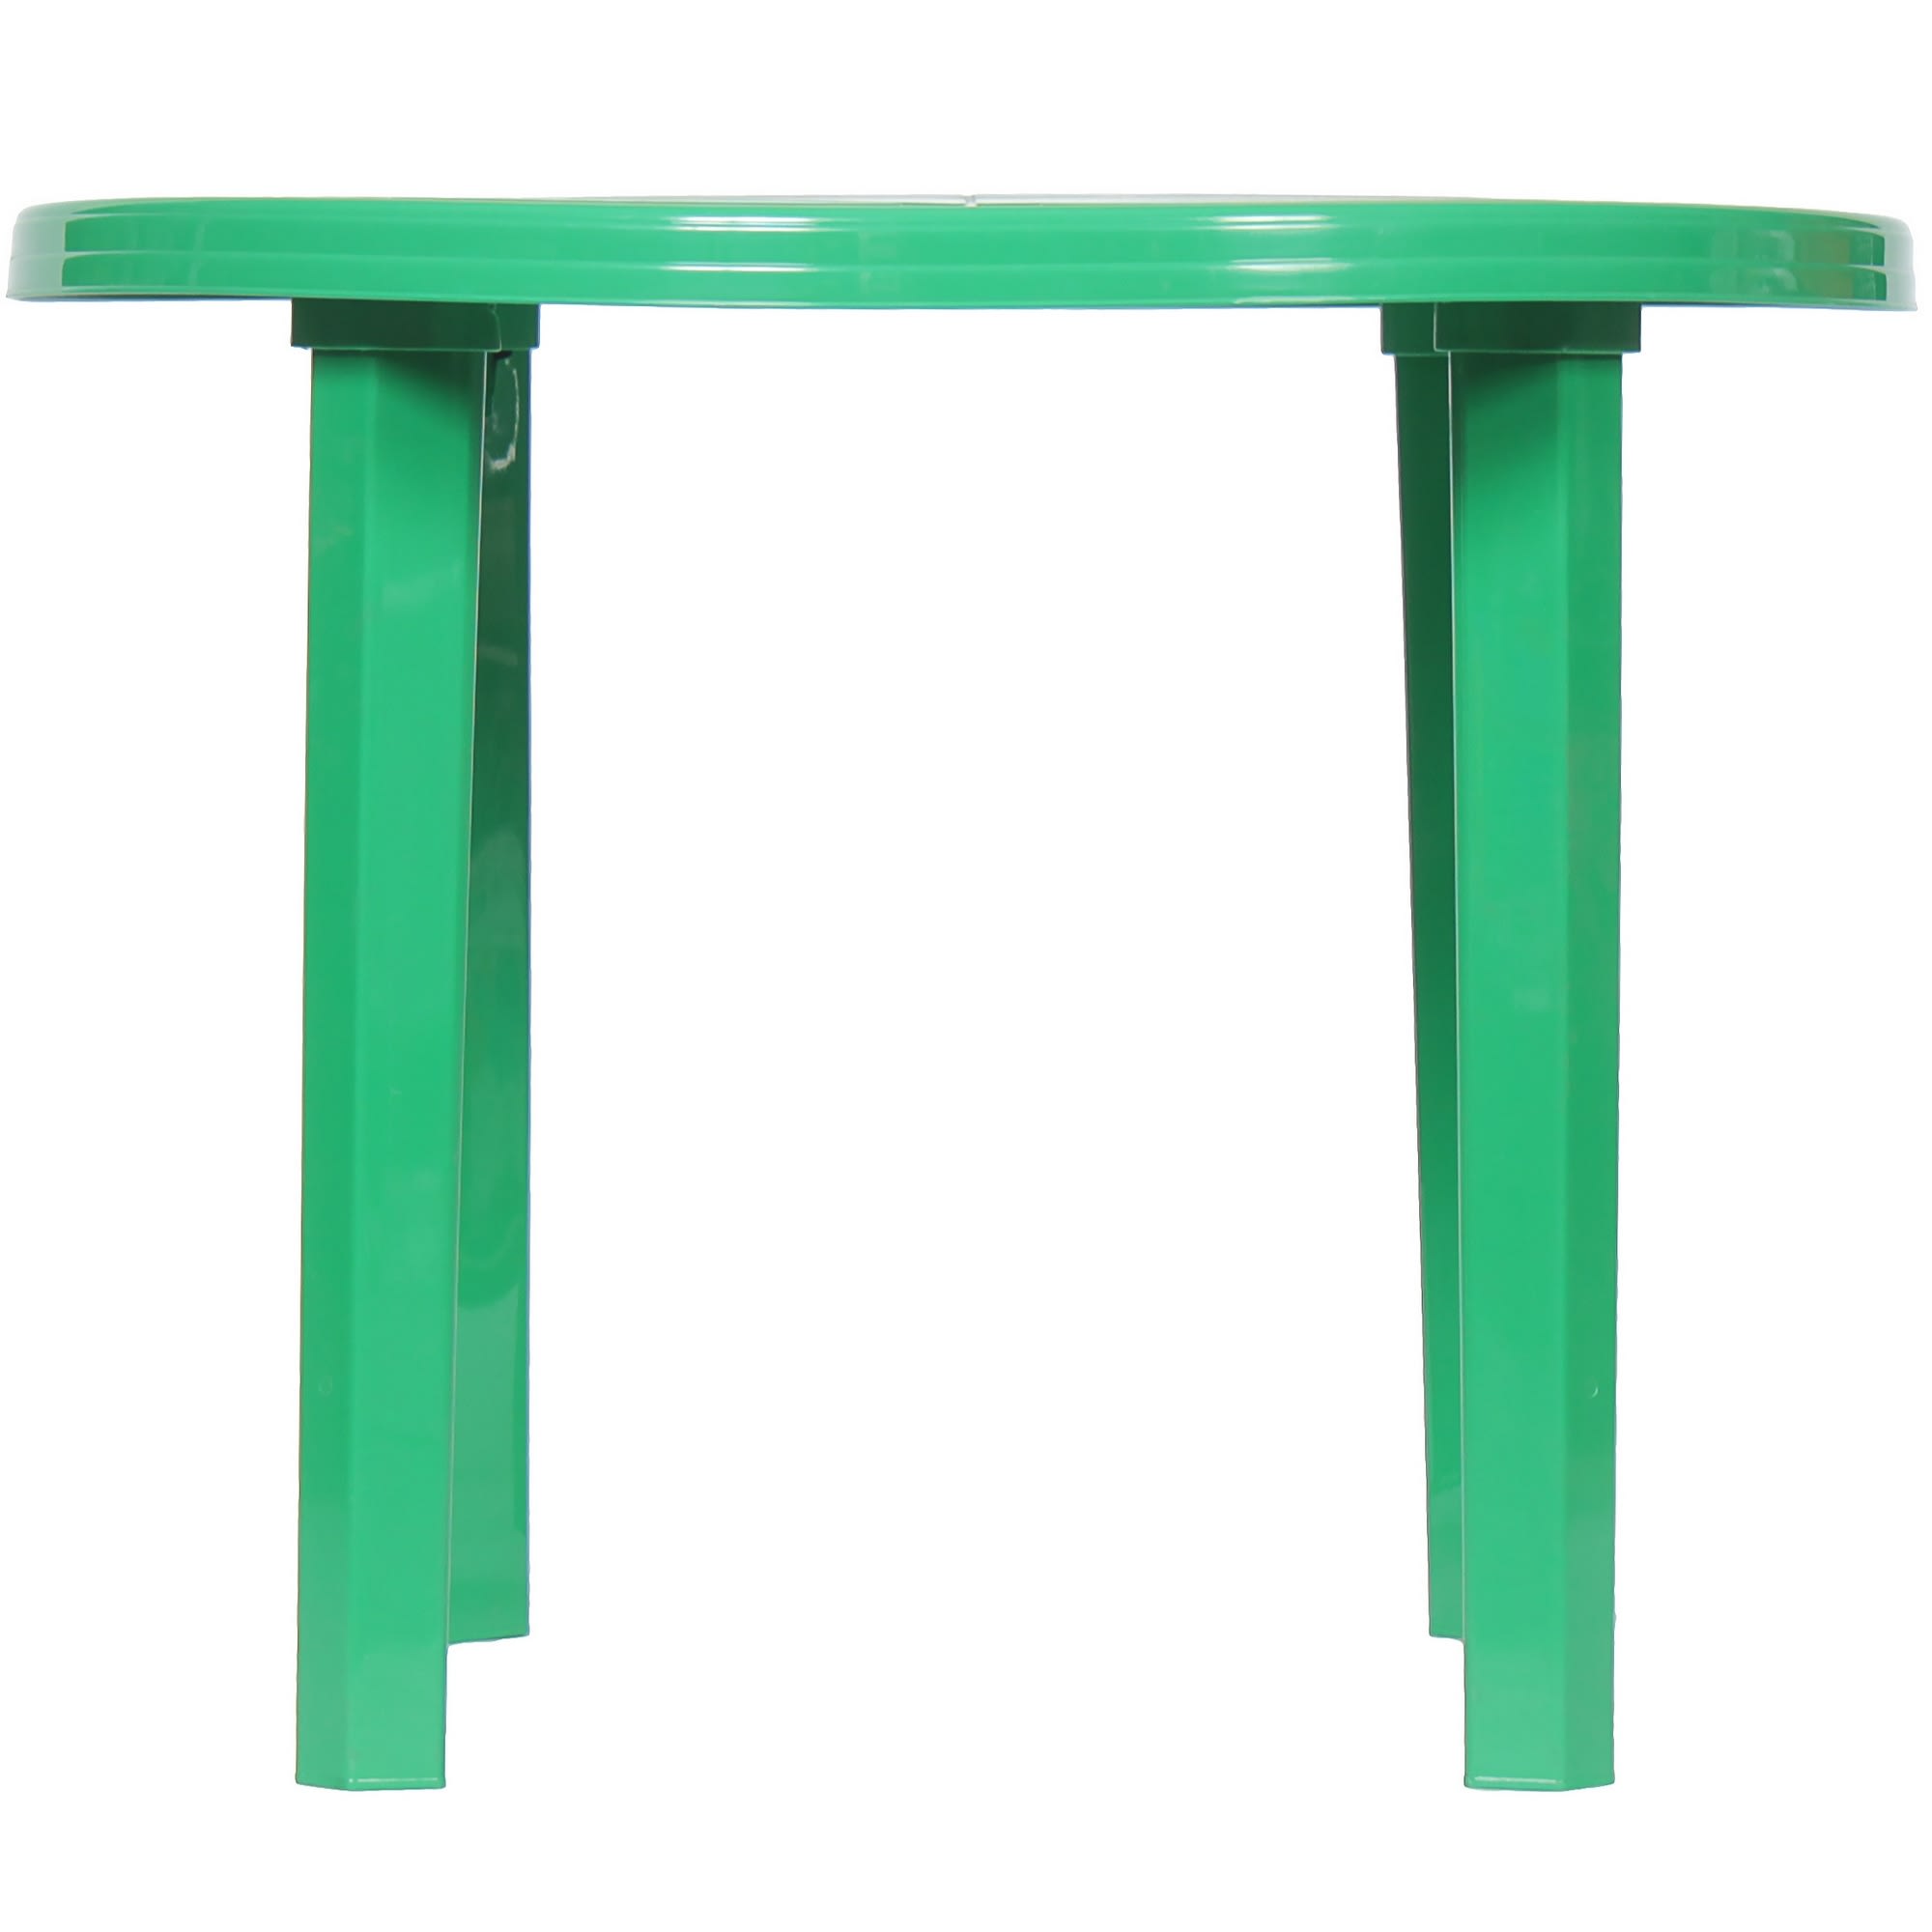 Высота пластикового стола. Стол садовый круглый 90x71x90 см пластик зеленый. Стол пласт. Круглый d 90см зеленый 05035 п113245. Стол круглый d=90см стандарт пластик групп зеленый. Стол садовый пластиковый Леруа Мерлен.